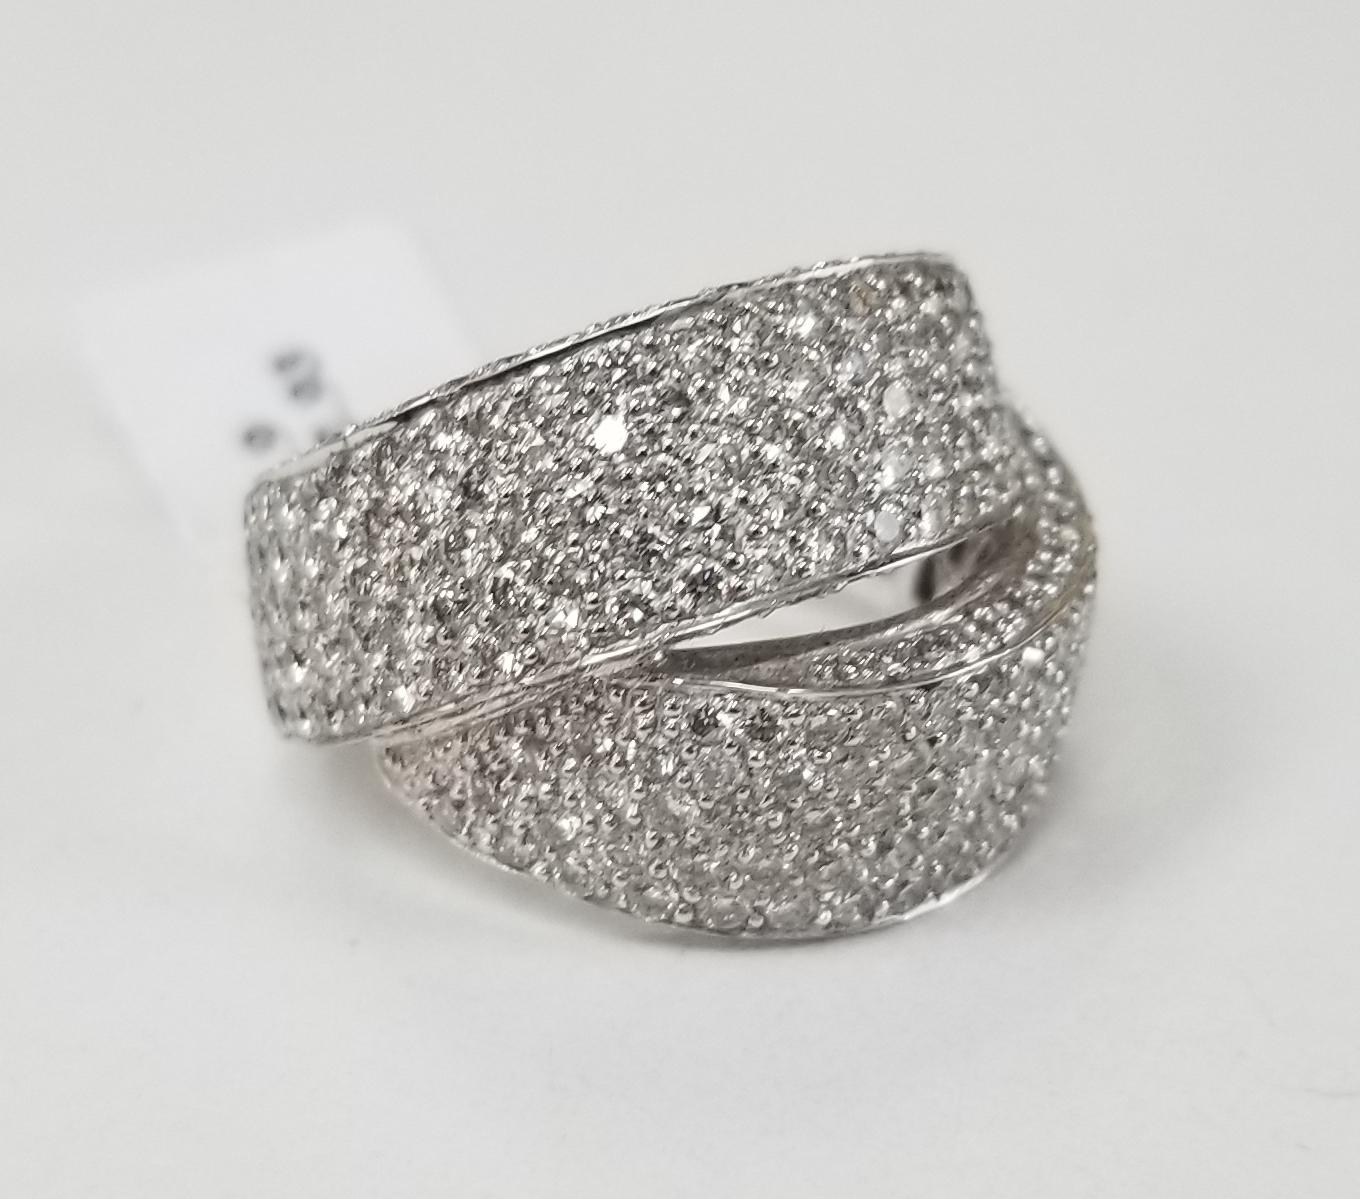 Ring aus 18 Karat Weißgold mit 261 runden Vollschliff-Diamanten von sehr guter Qualität mit einem Gewicht von 2,93 ct. Die Ringgröße beträgt 6,5 und ist 17 mm breit. 